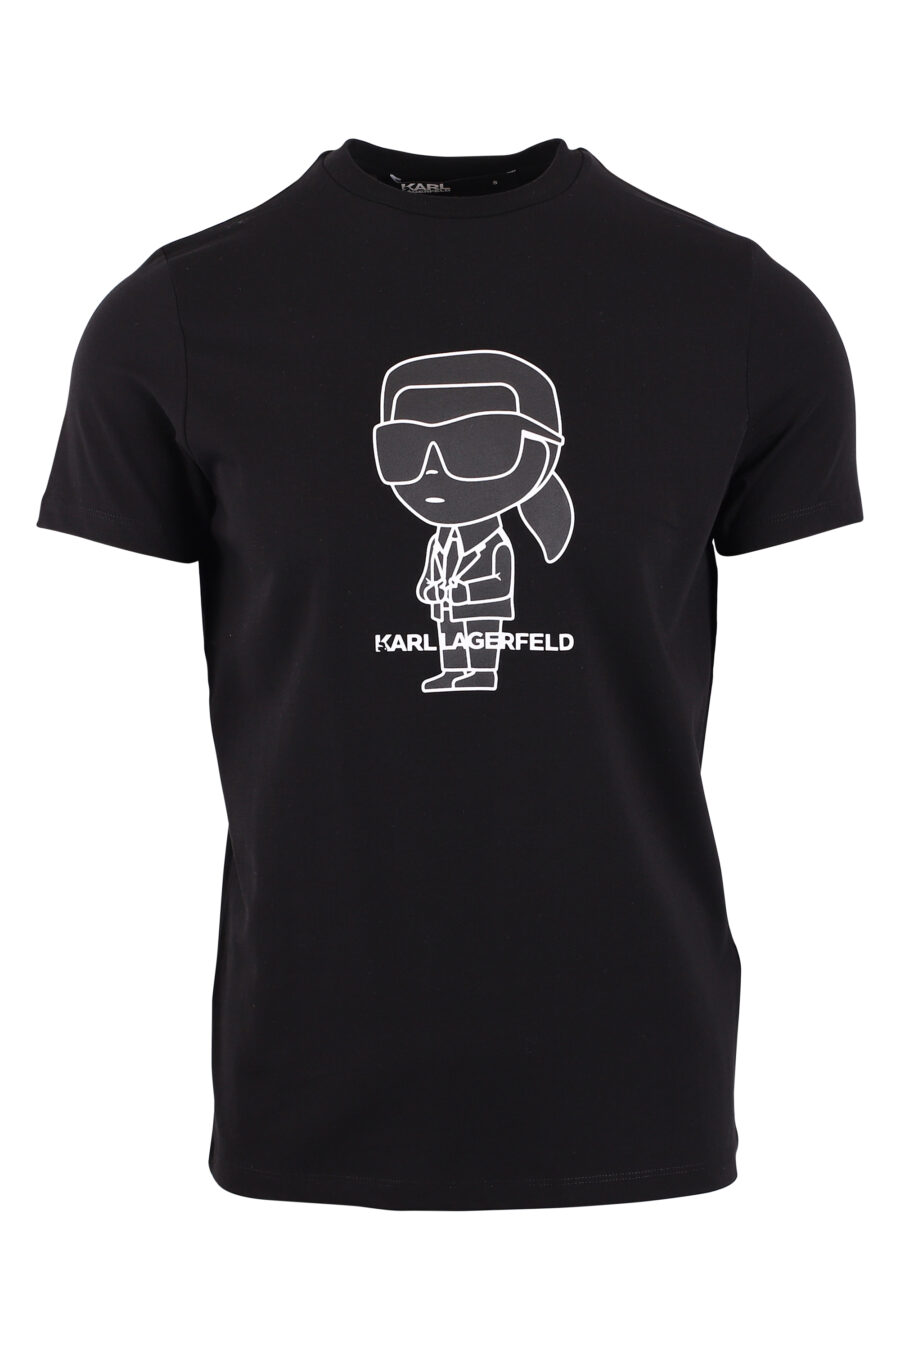 Camiseta negra con maxilogo "karl" en contraste blanco - IMG 9409